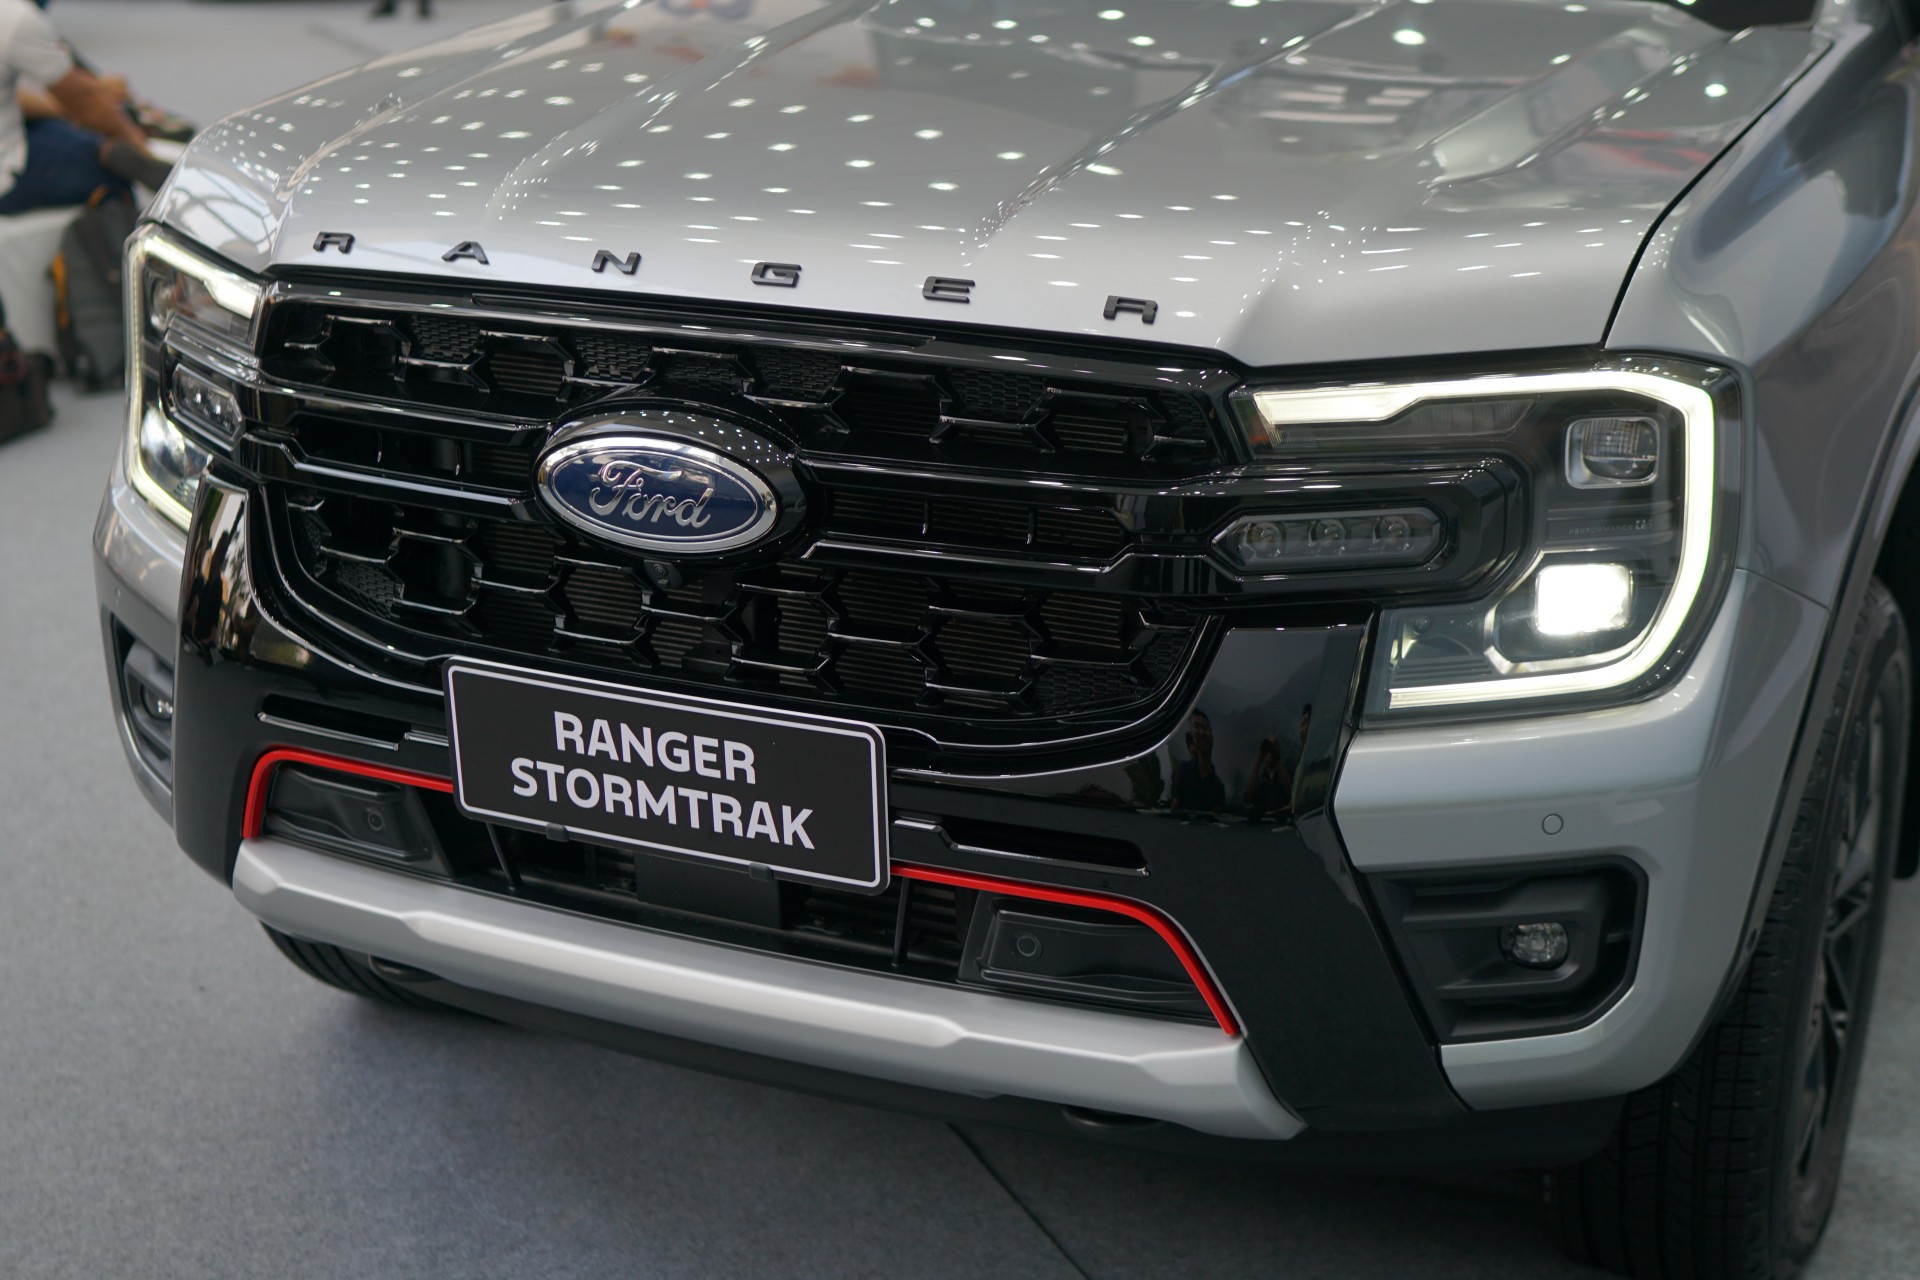 Soi chi tiết bộ đôi Ford Everest Platinum và Ranger Stormtrak vừa ra mắt